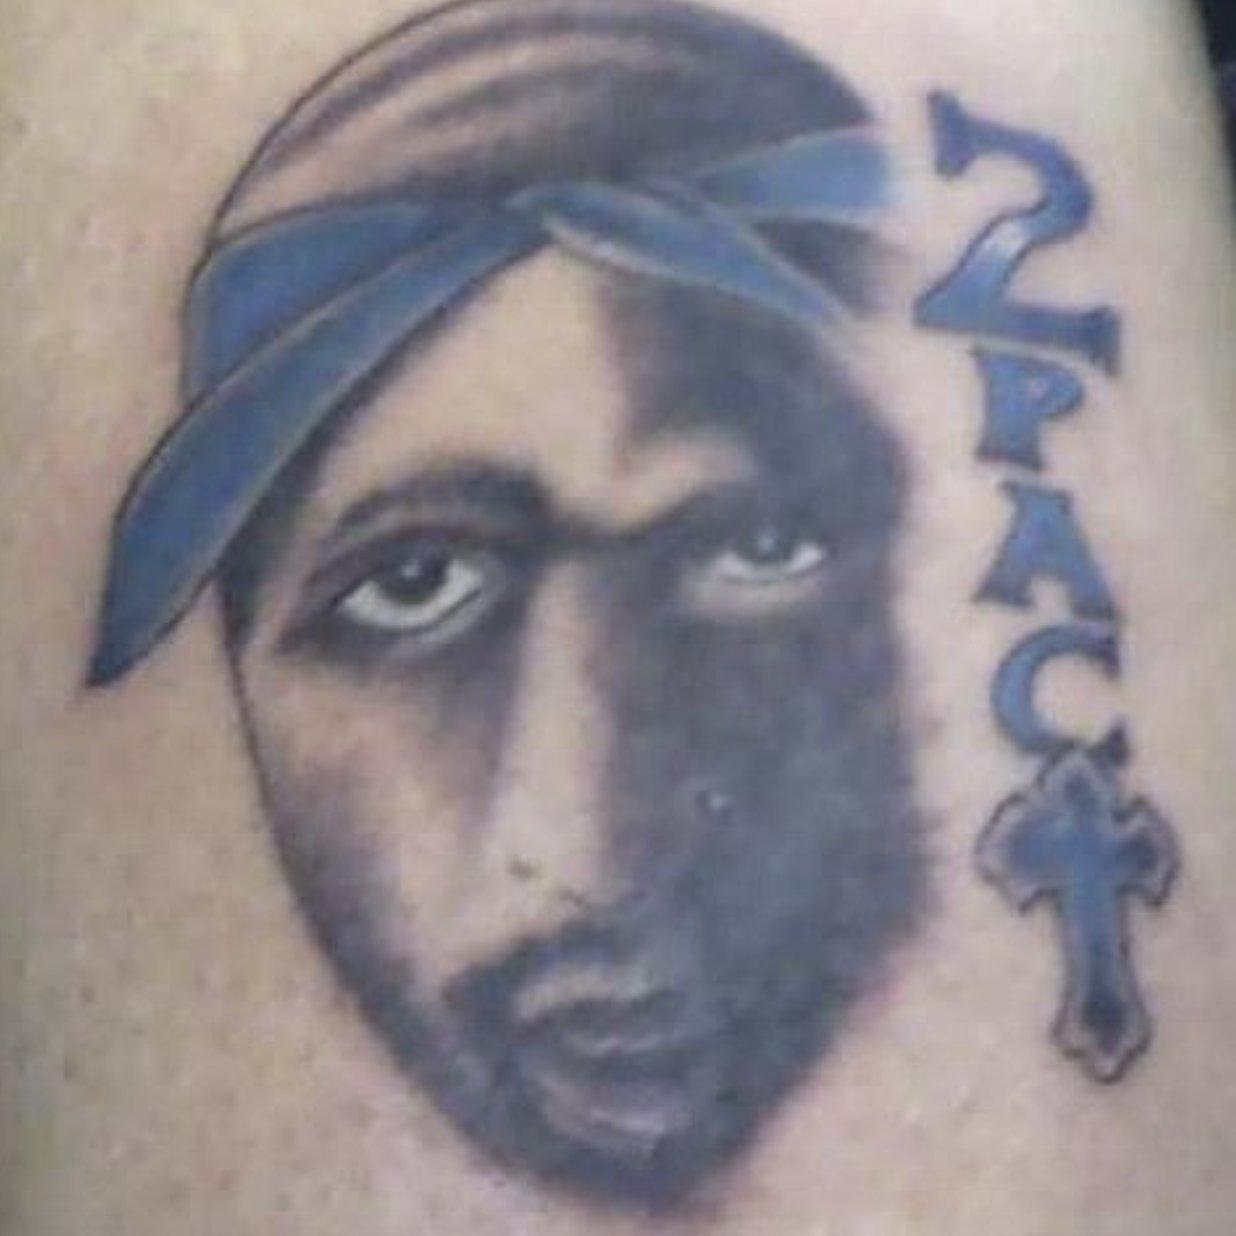 Bad Tattoos - 2pac tattoo